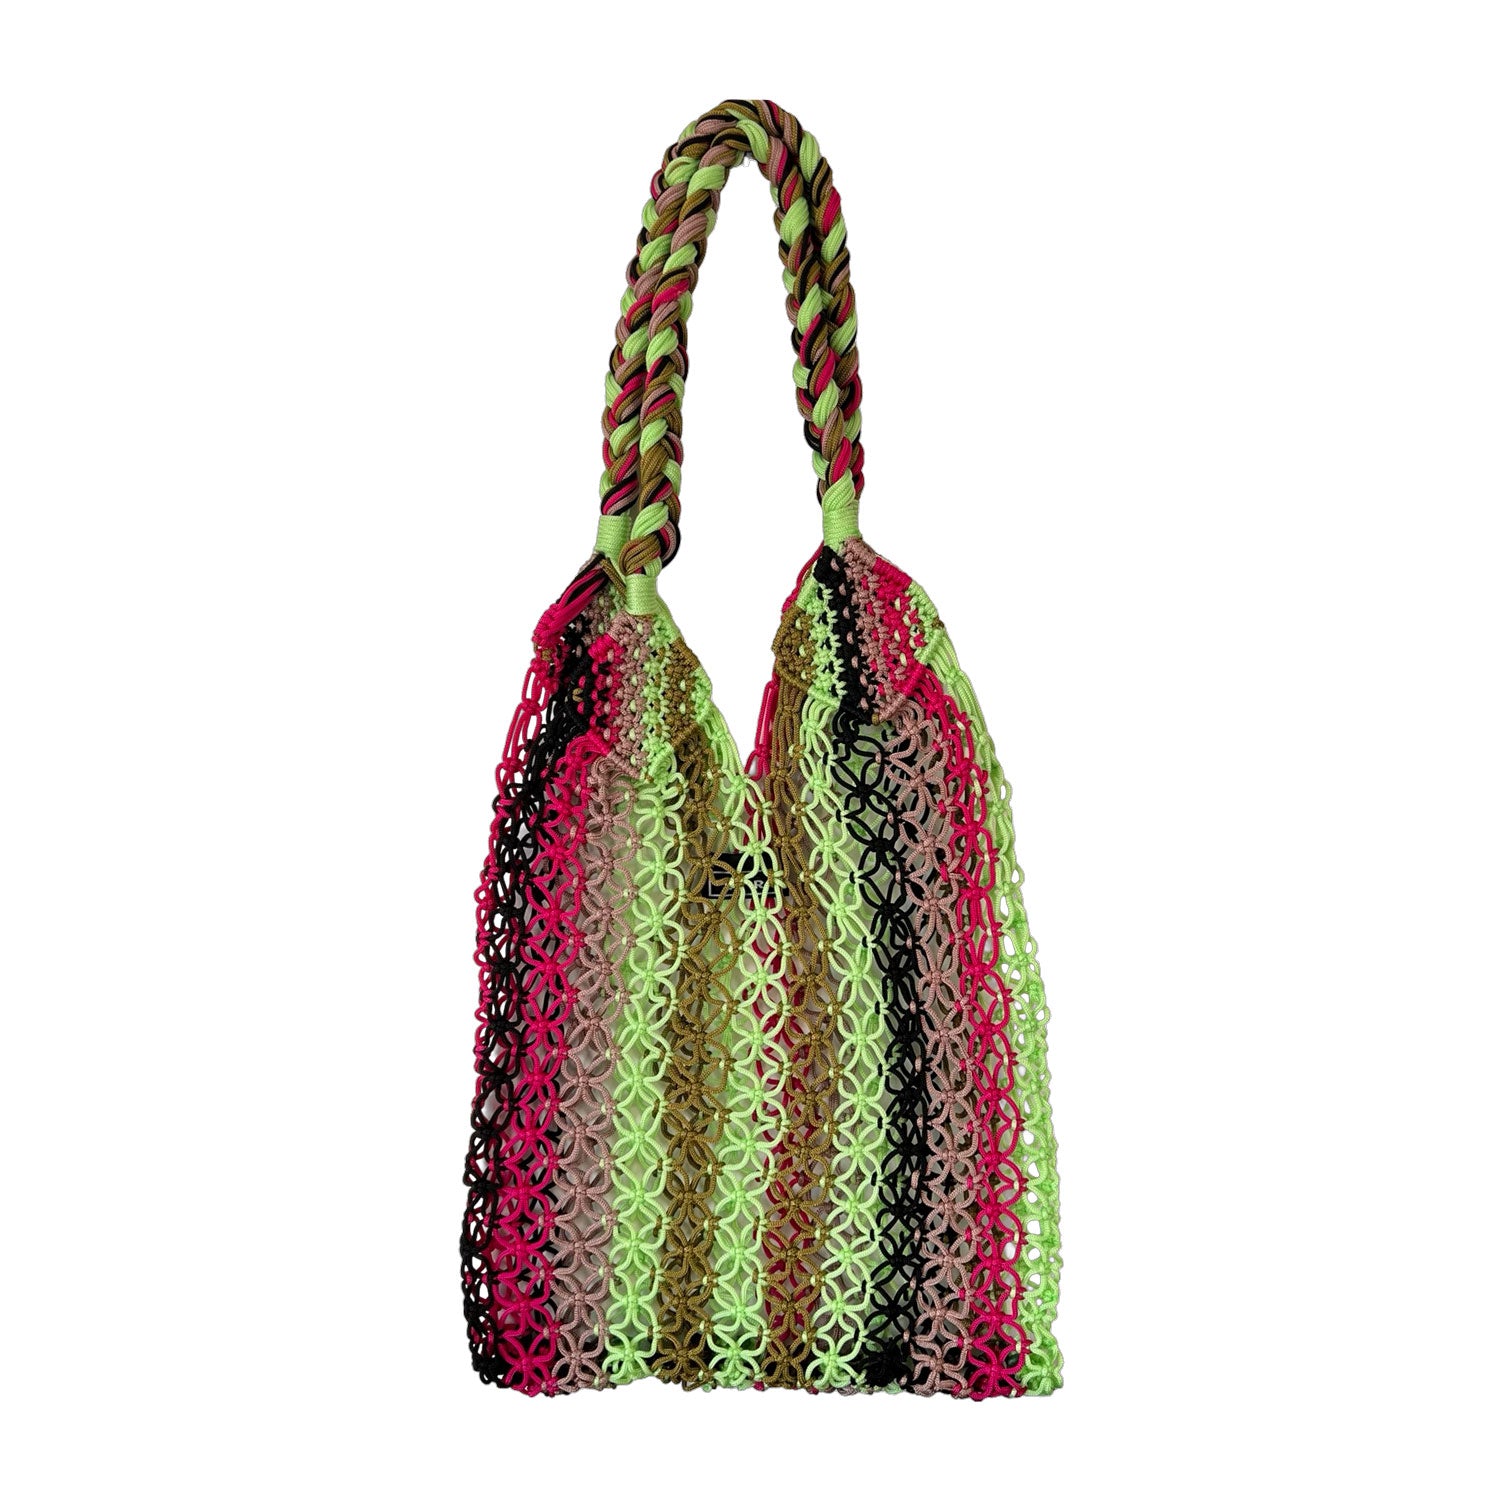 Braided Crochet Handbag in Green & Pink